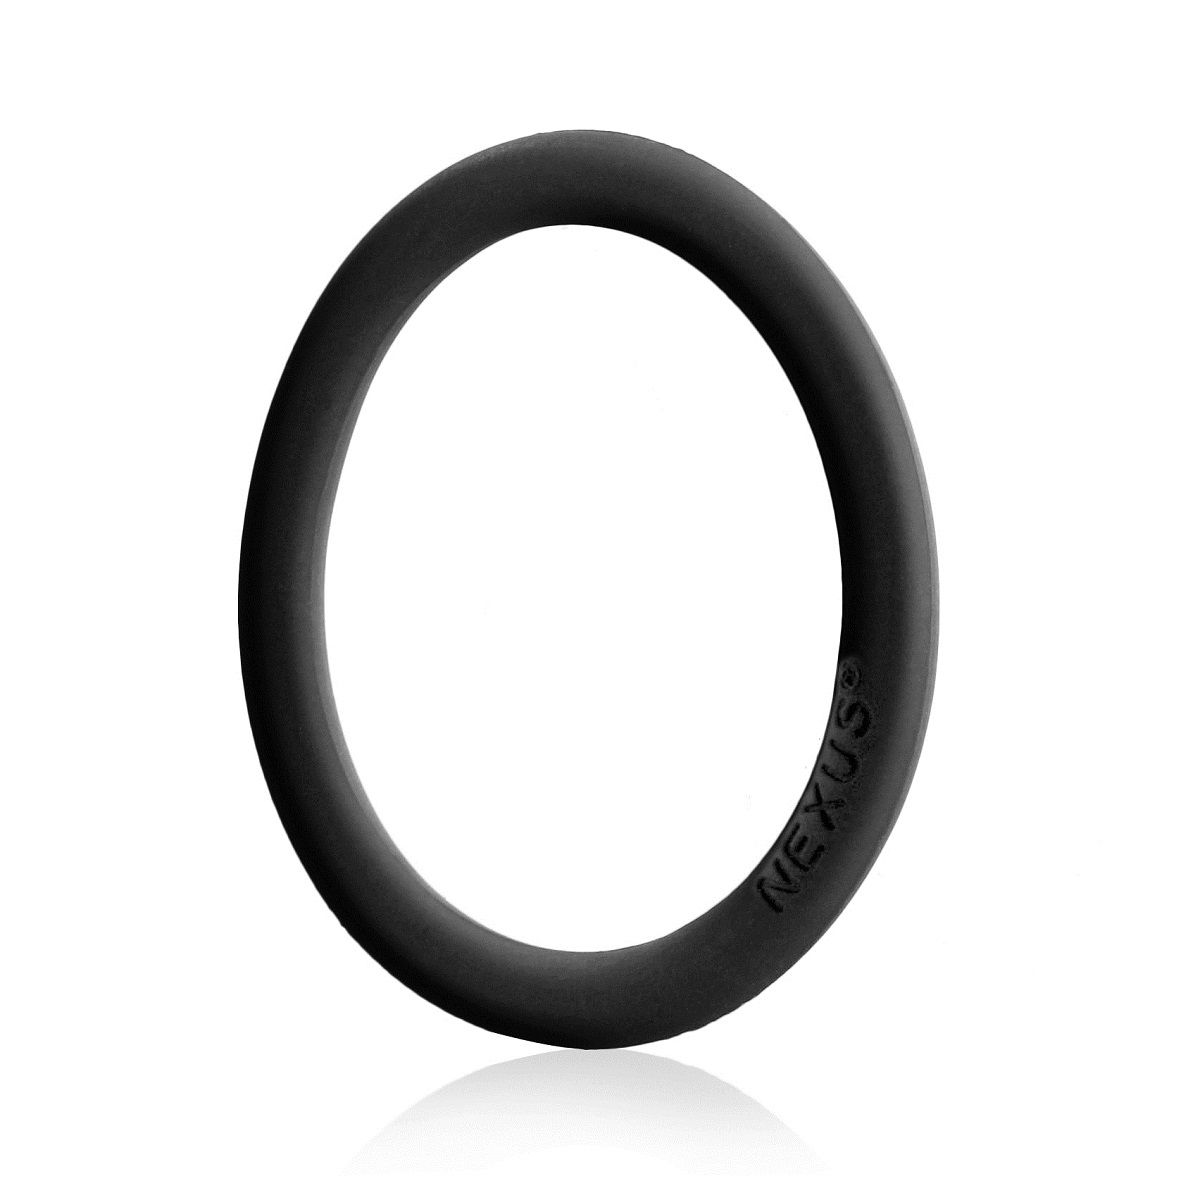 Эластичное эрекционное кольцо от Nexus. Супер тянущийся медицинский силикон поможет удержать эрекцию и продлить половой акт.